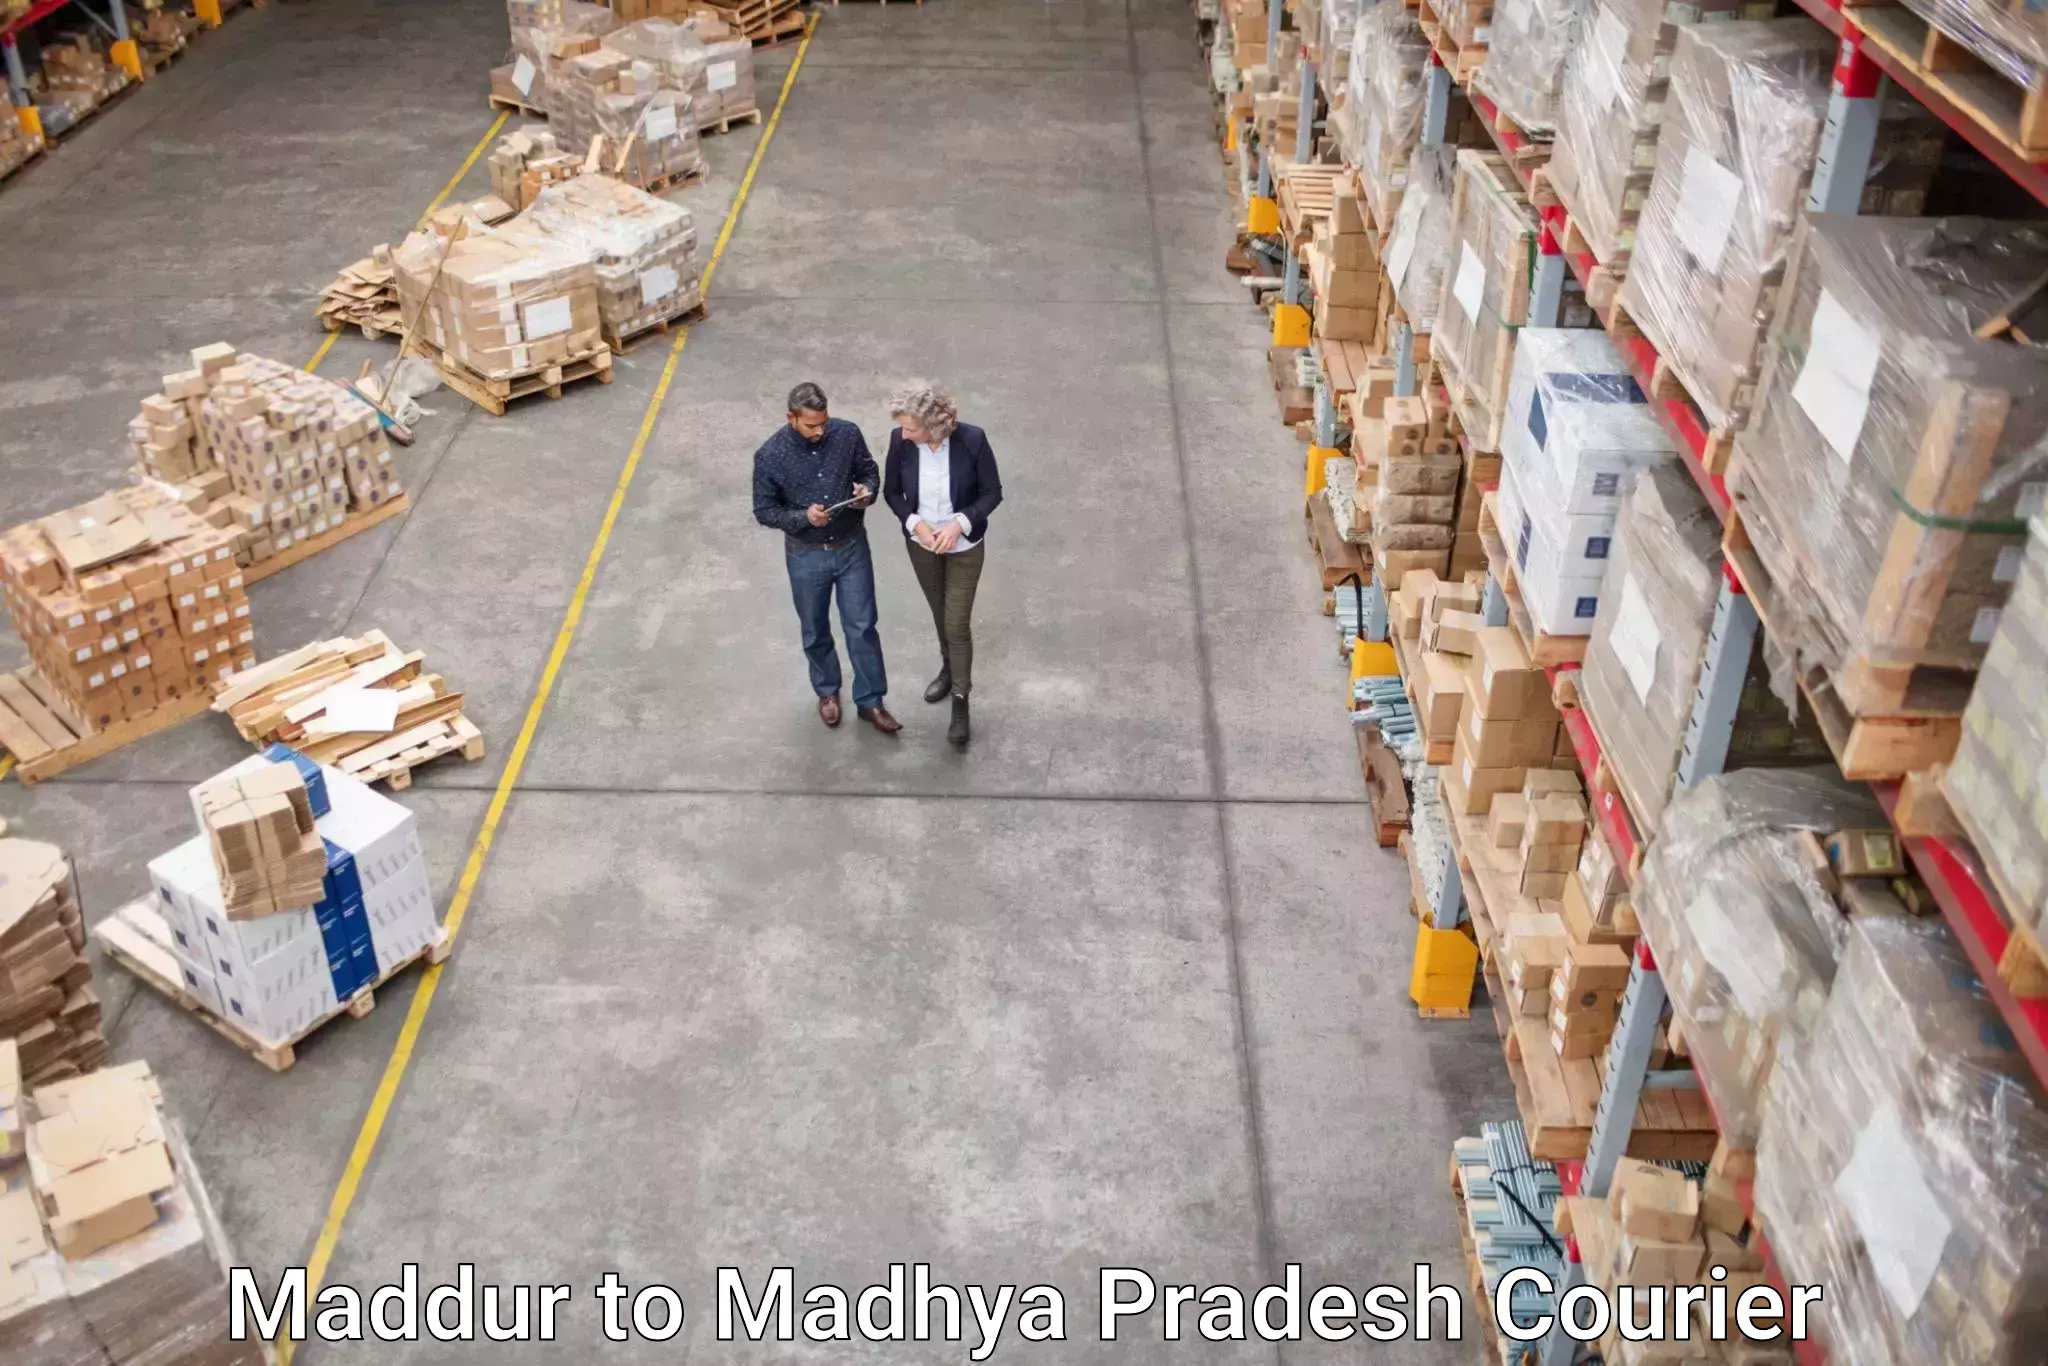 Tailored shipping services Maddur to Lavkush Nagar